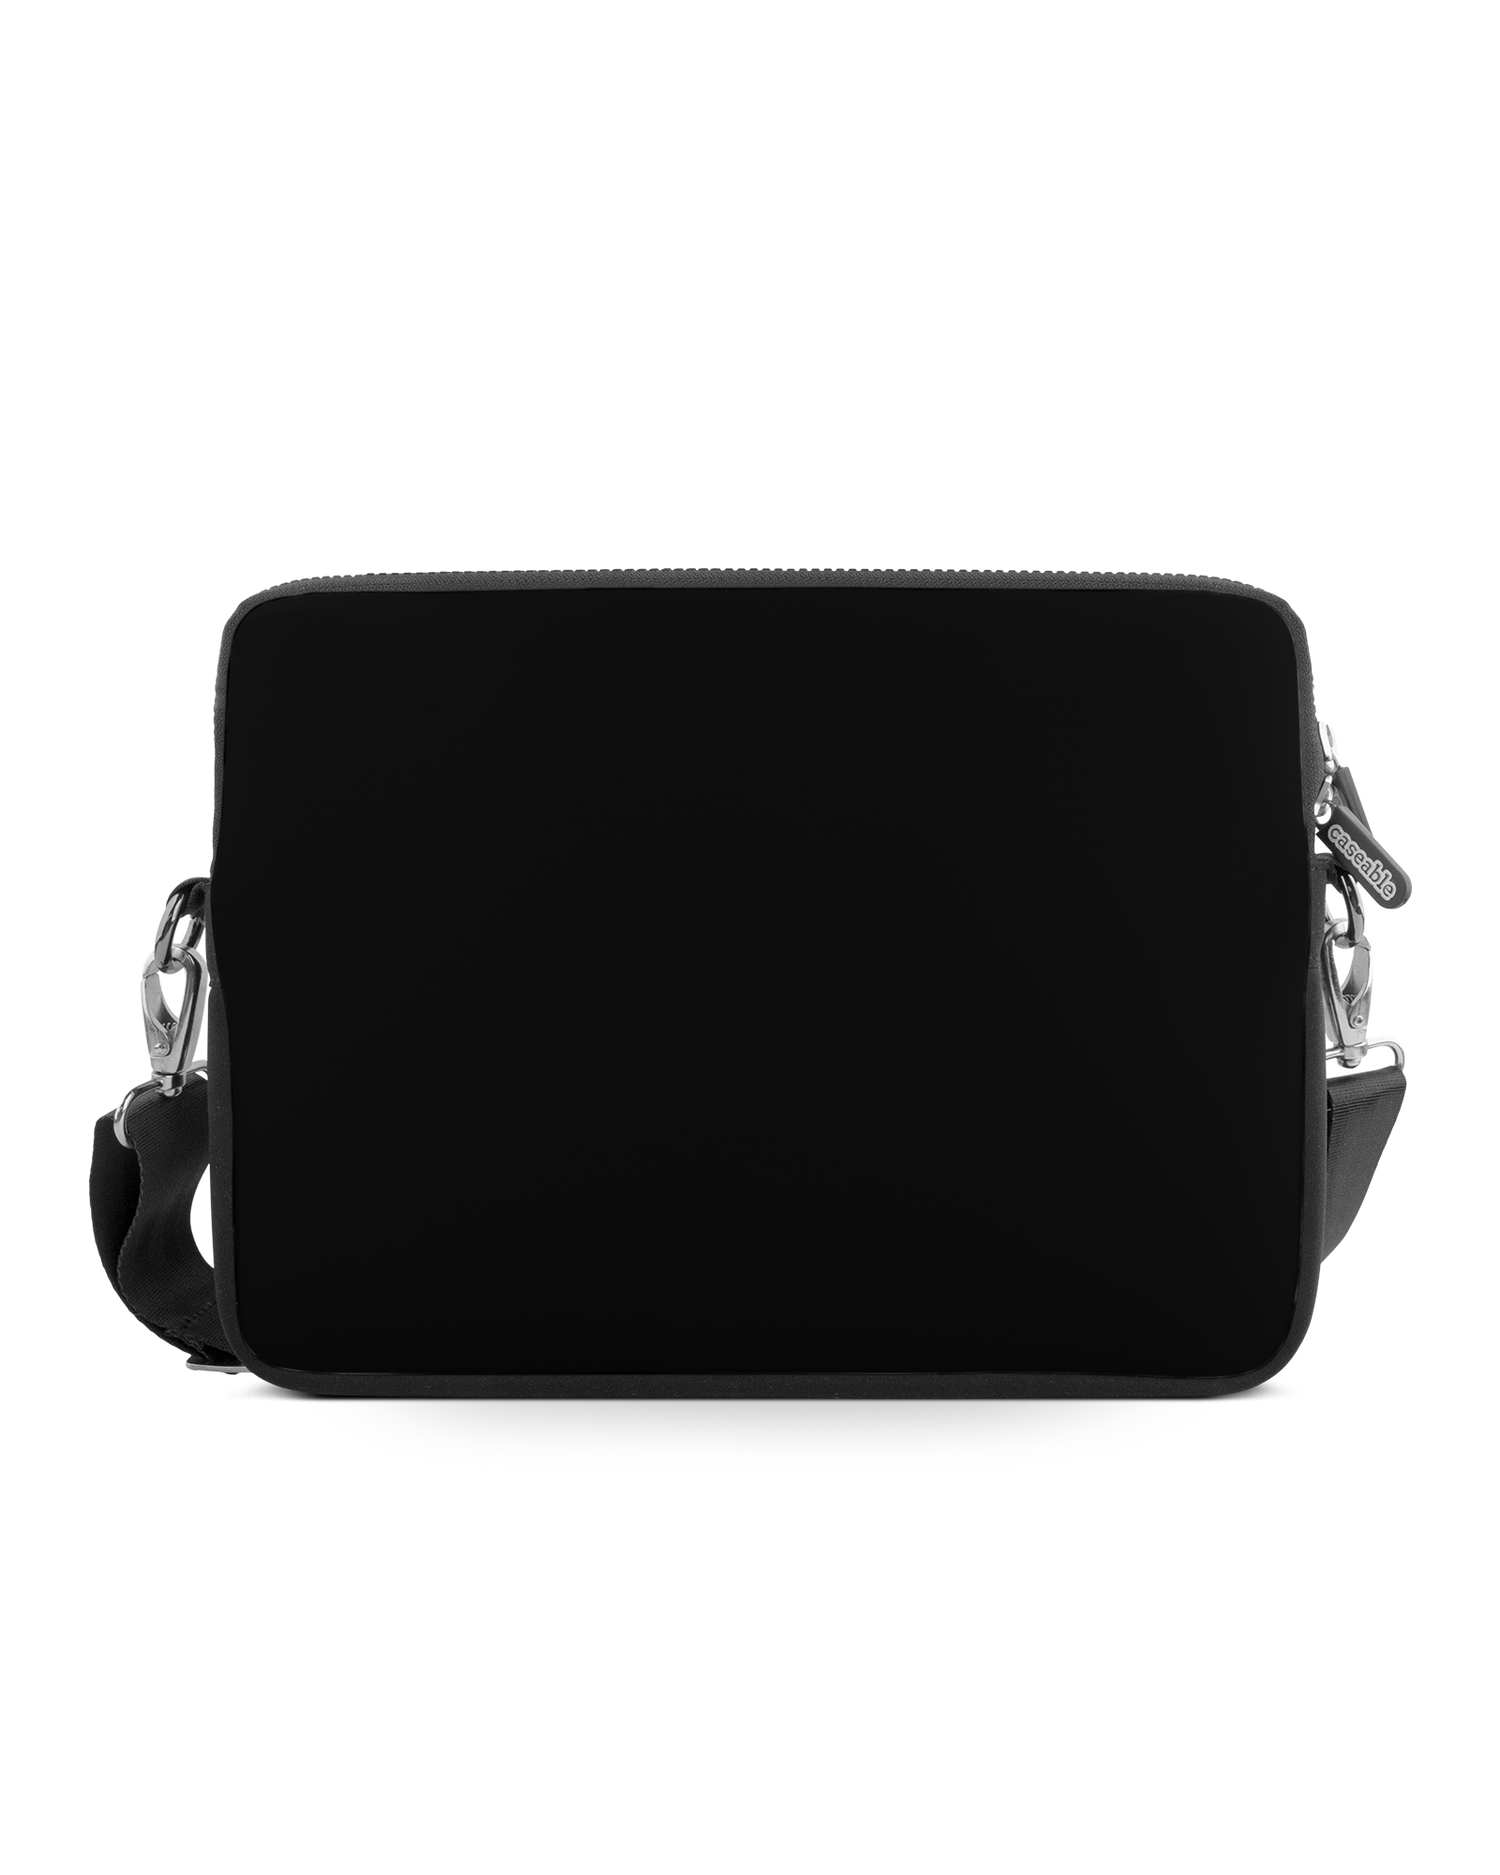 BLACK Premium Laptoptasche 15 Zoll: Vorderansicht